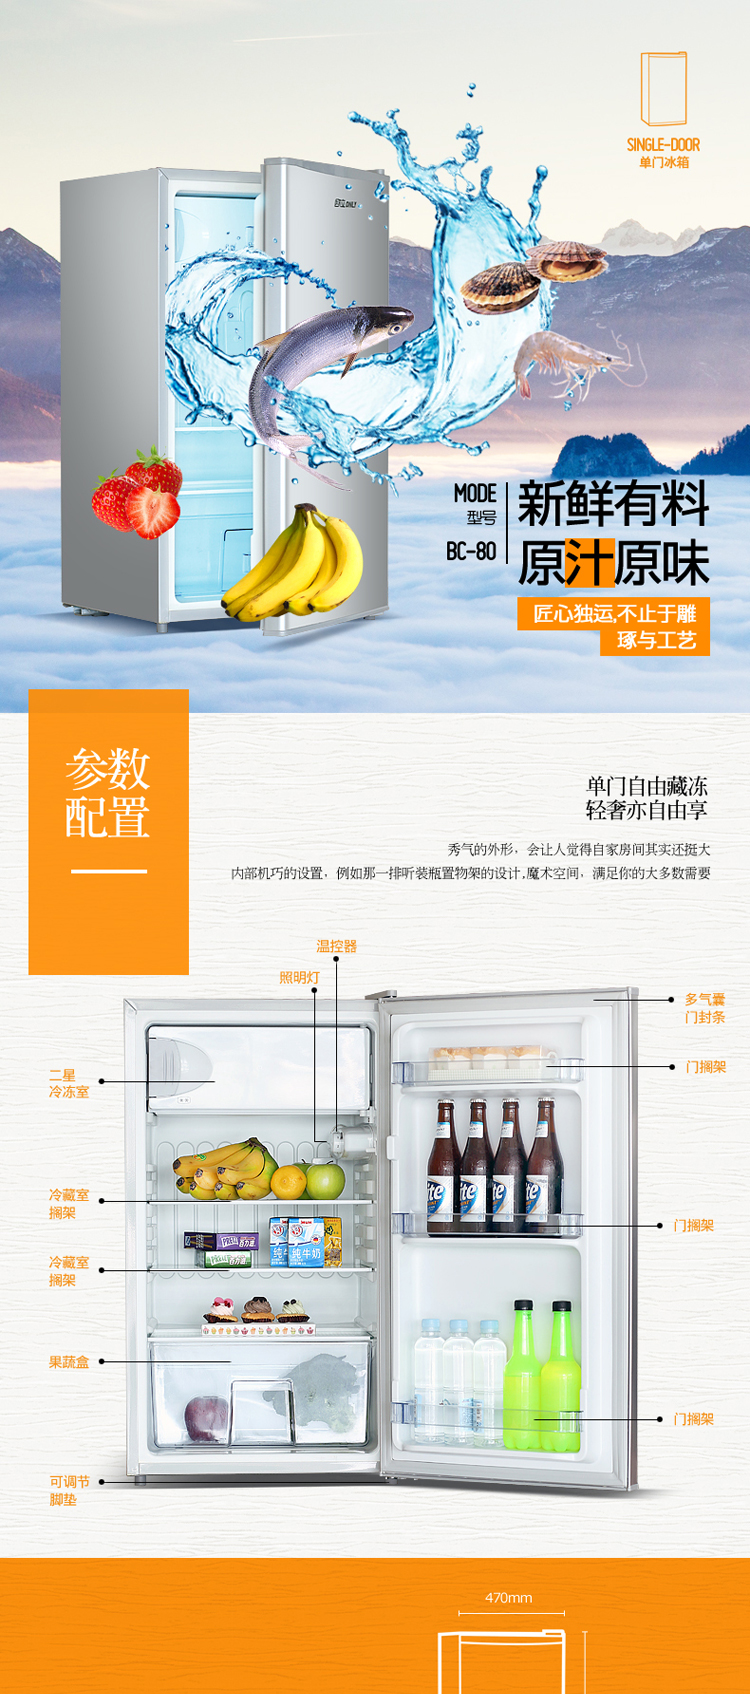 欧立(ONLY) BC-80 单门冰箱冷藏冷冻冰箱家用宿舍静音节能小型冰箱